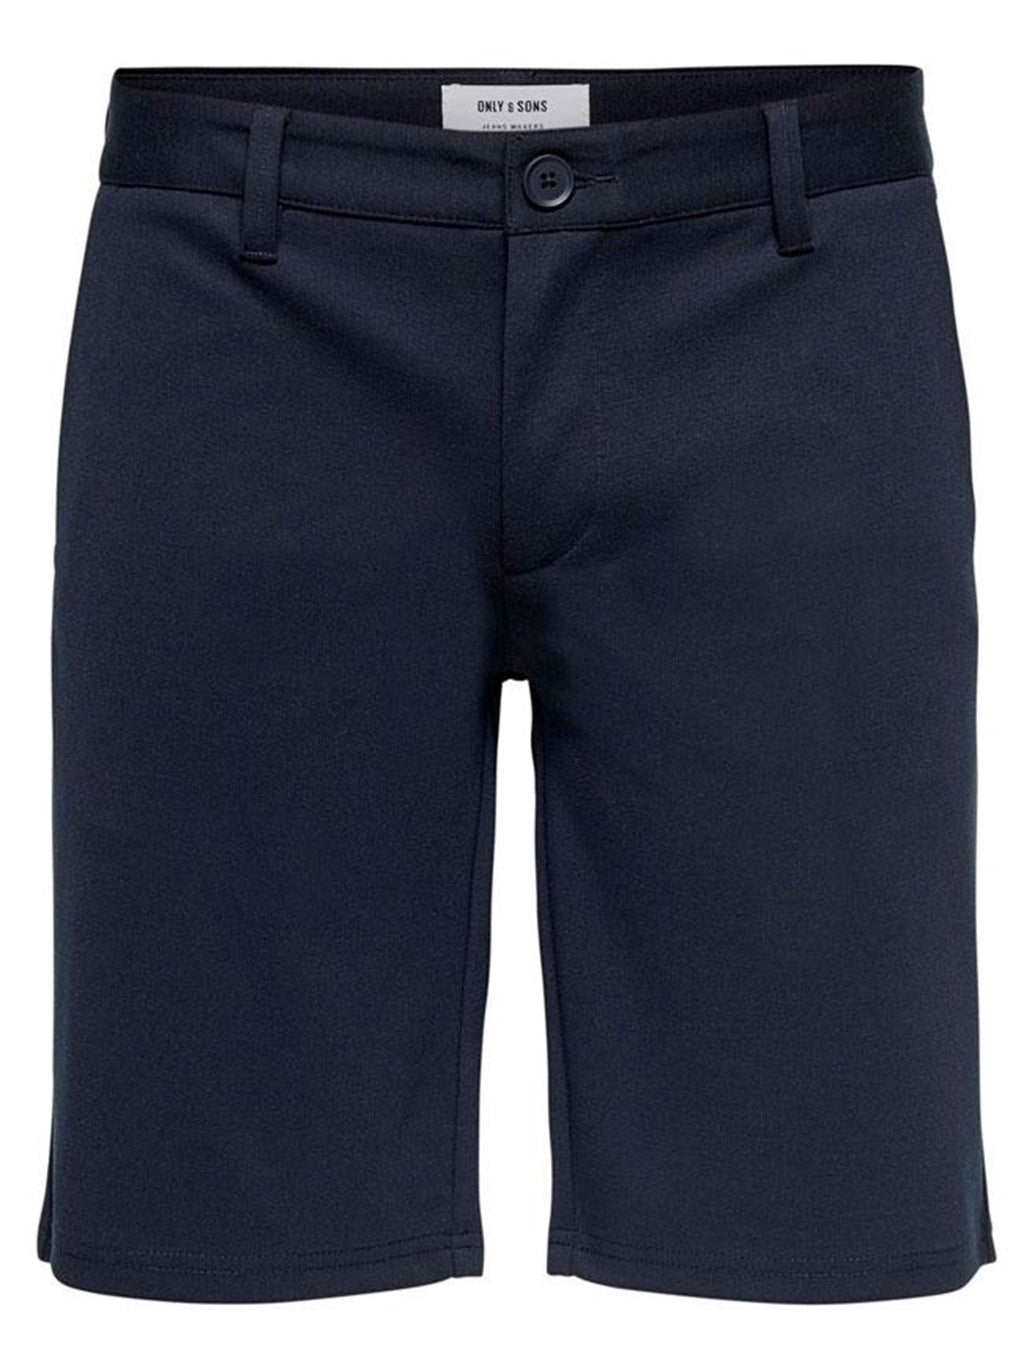 Spota shorts - Navy